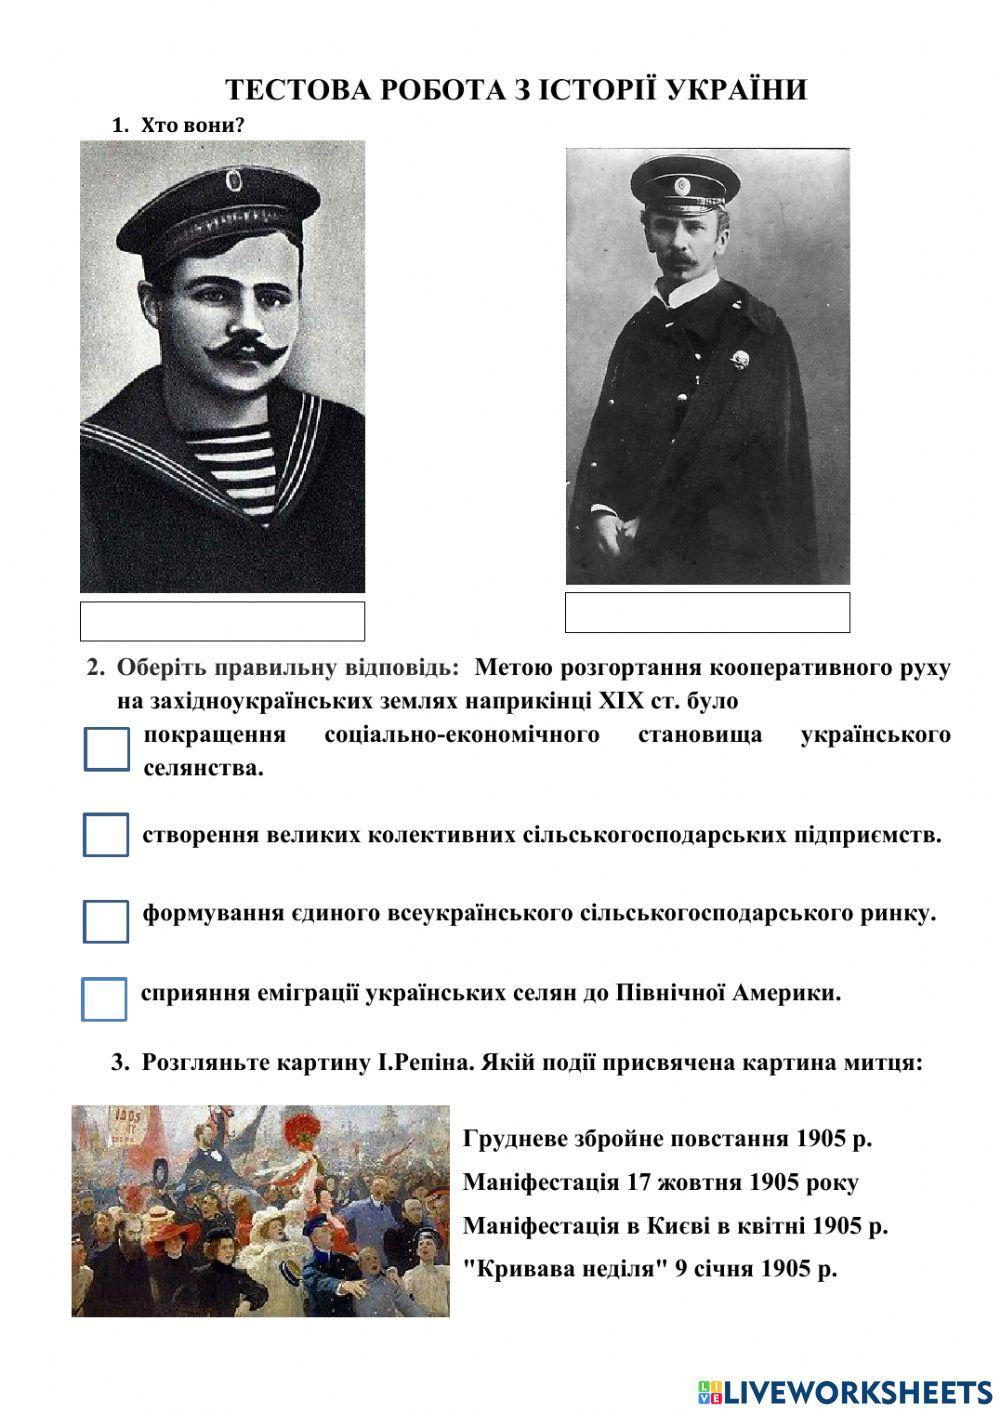 Тестова робота з історії України